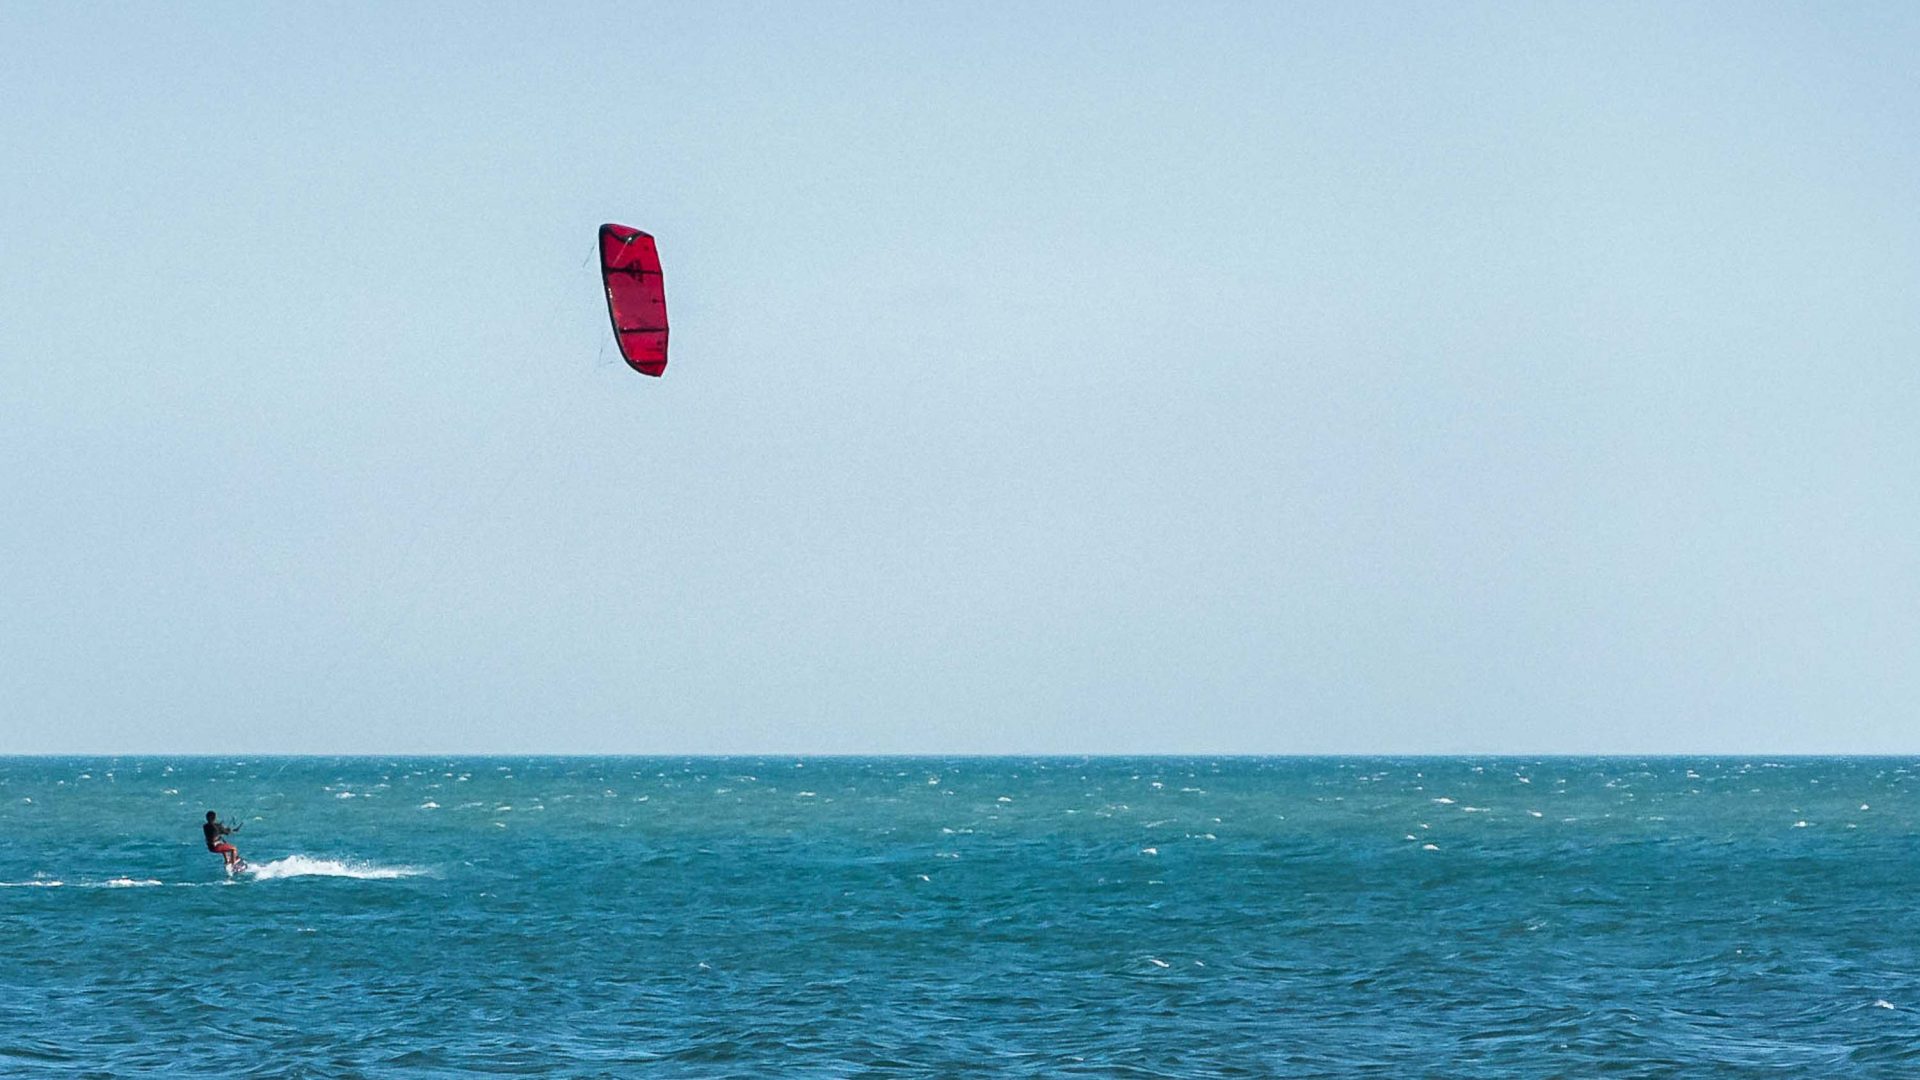 A tourist kite surfing.